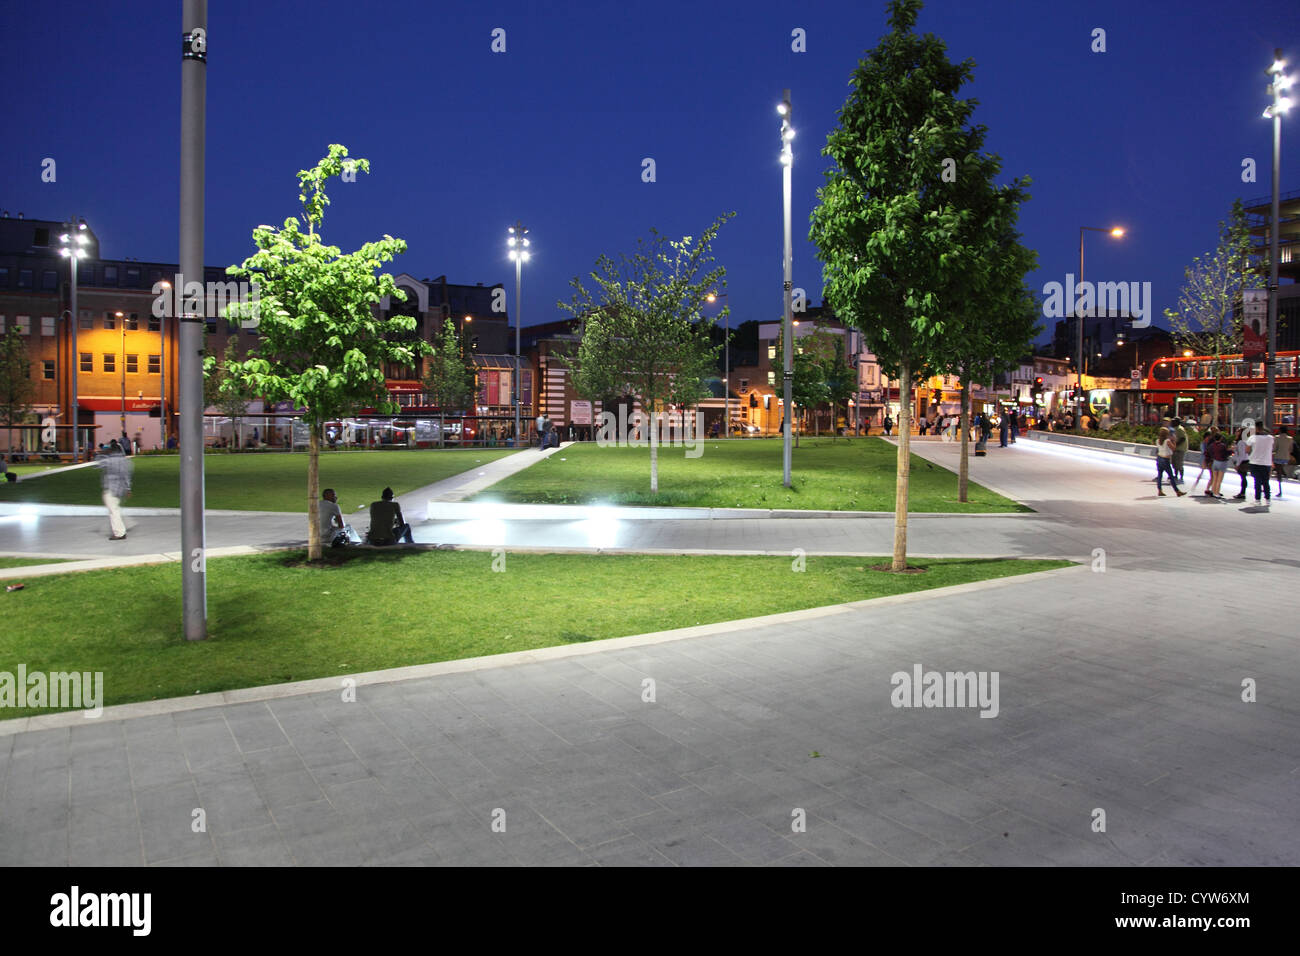 Le général Gordon Place, Woolwich, UK. Place de la ville moderne, situé dans la nuit avec de larges trottoirs, sièges, arbres et pelouse. Banque D'Images